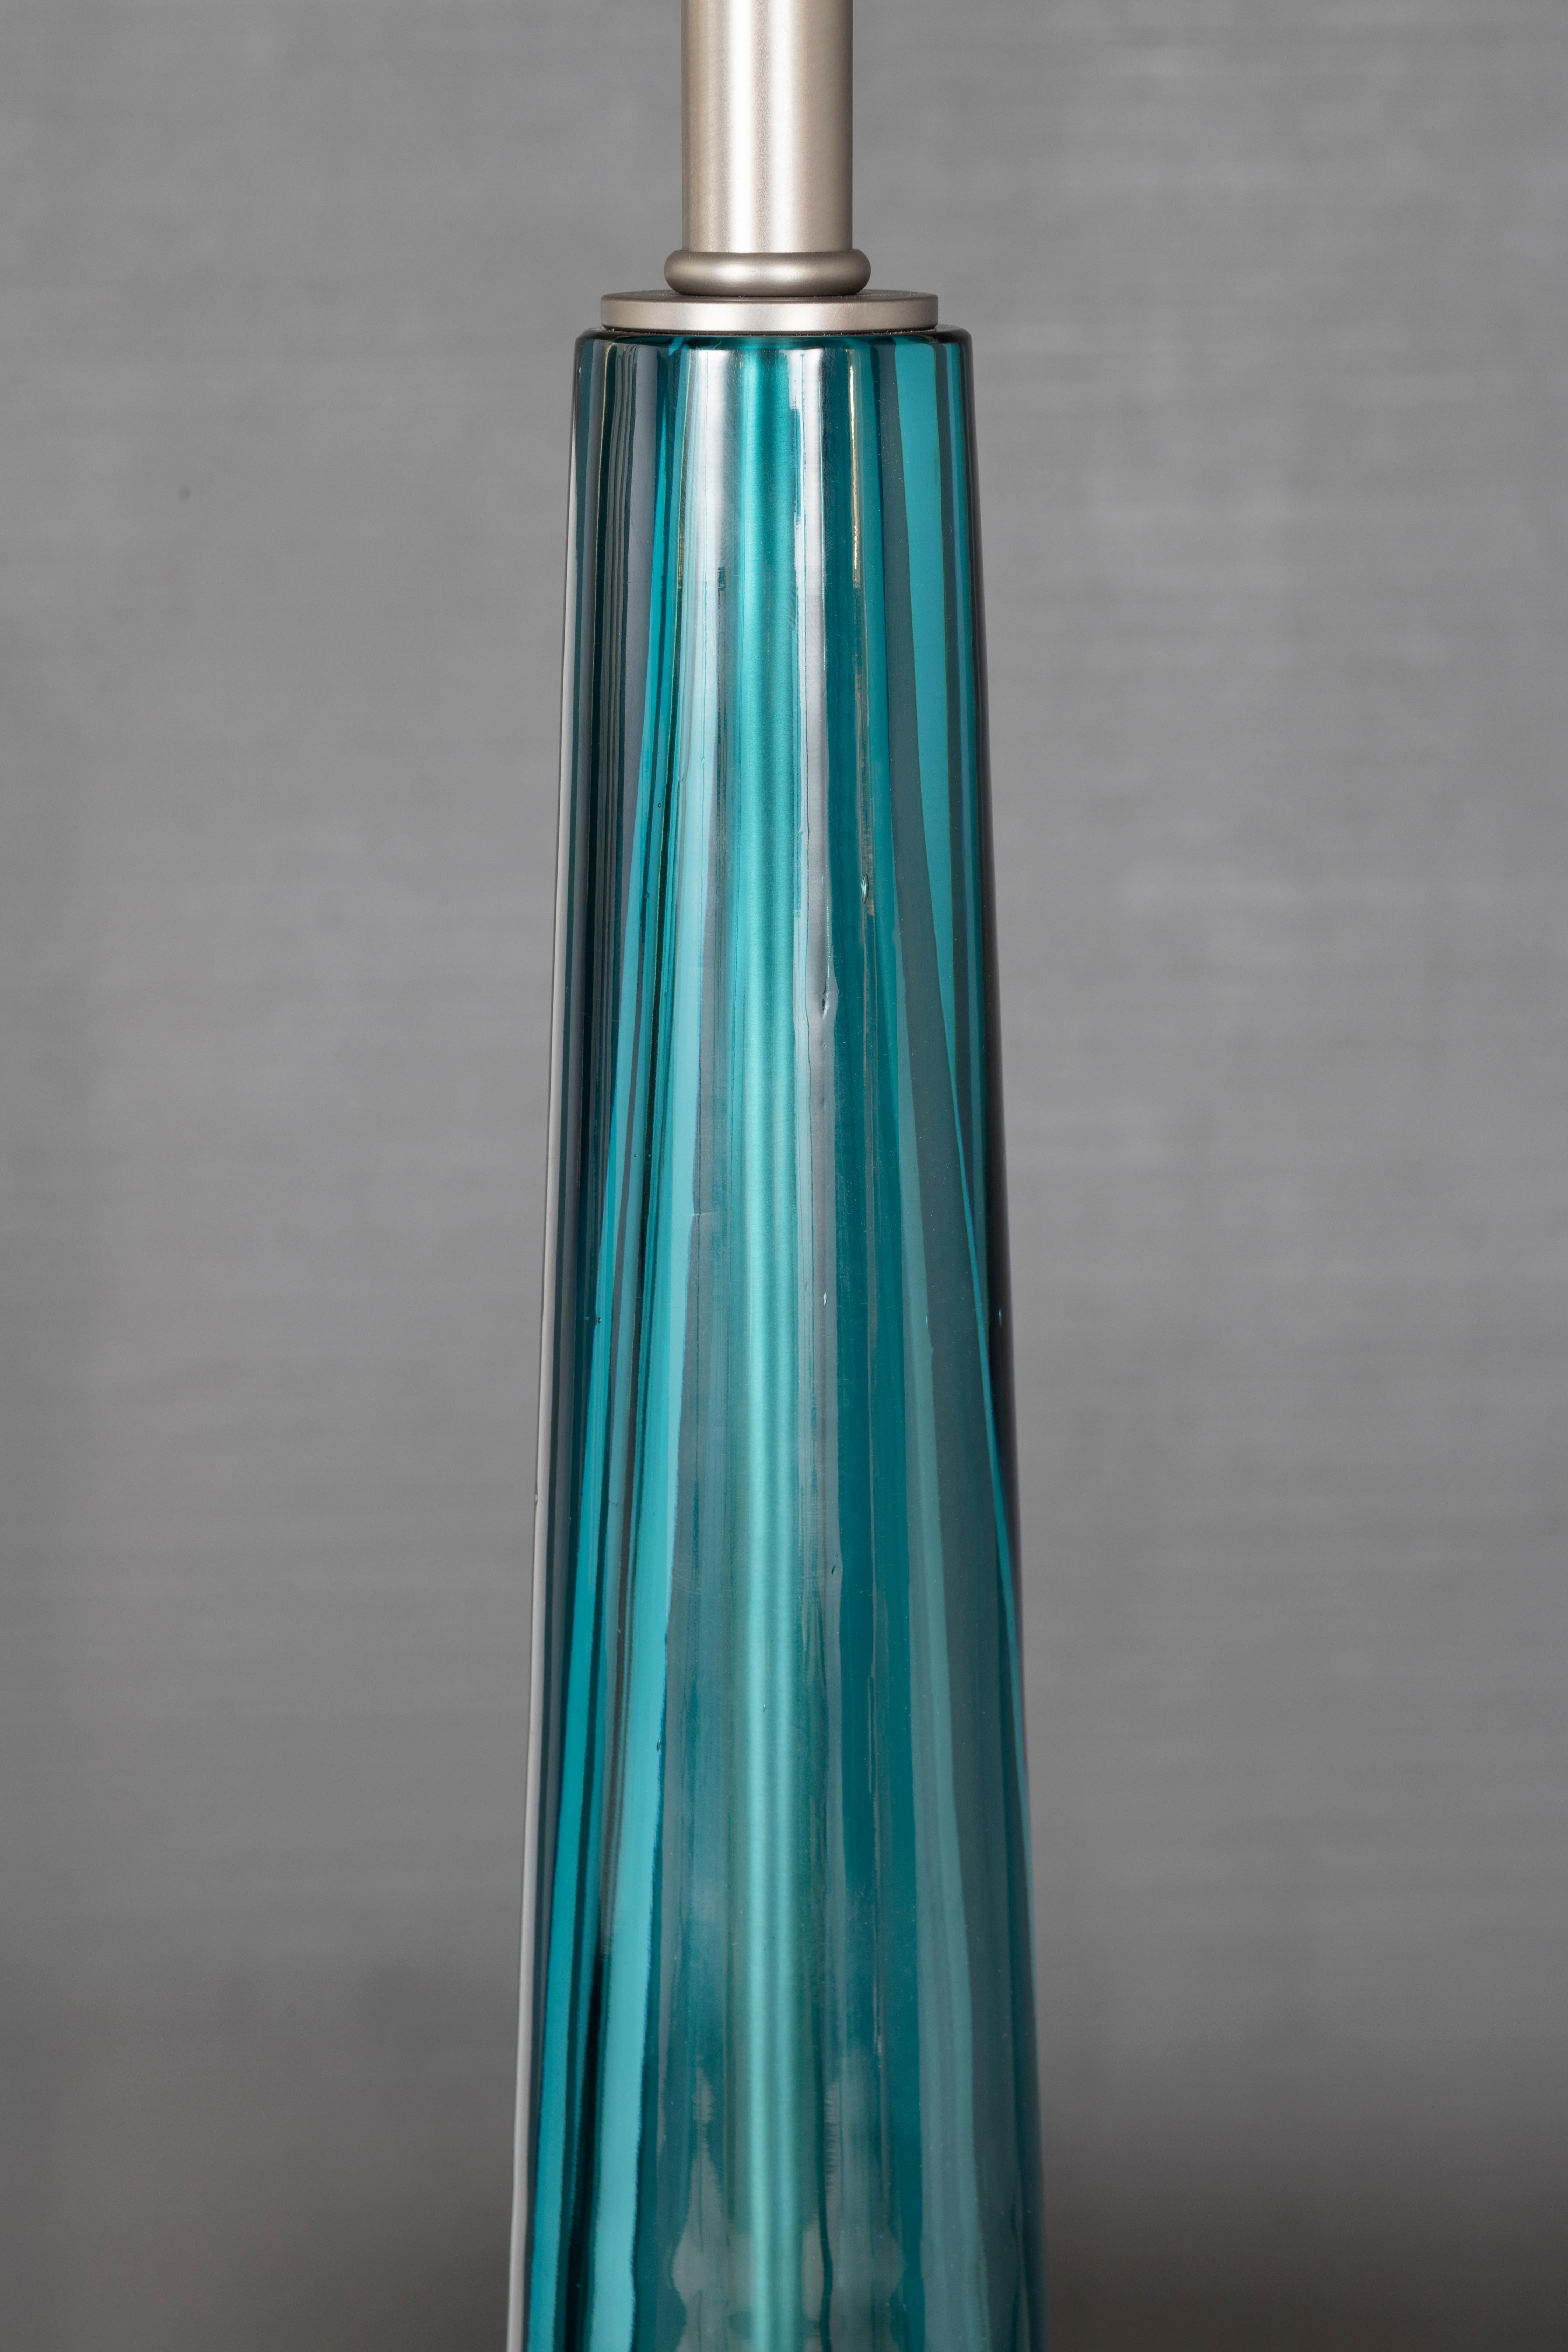 Italian Reng, Sukini, Aqua Crystal Table Lamp